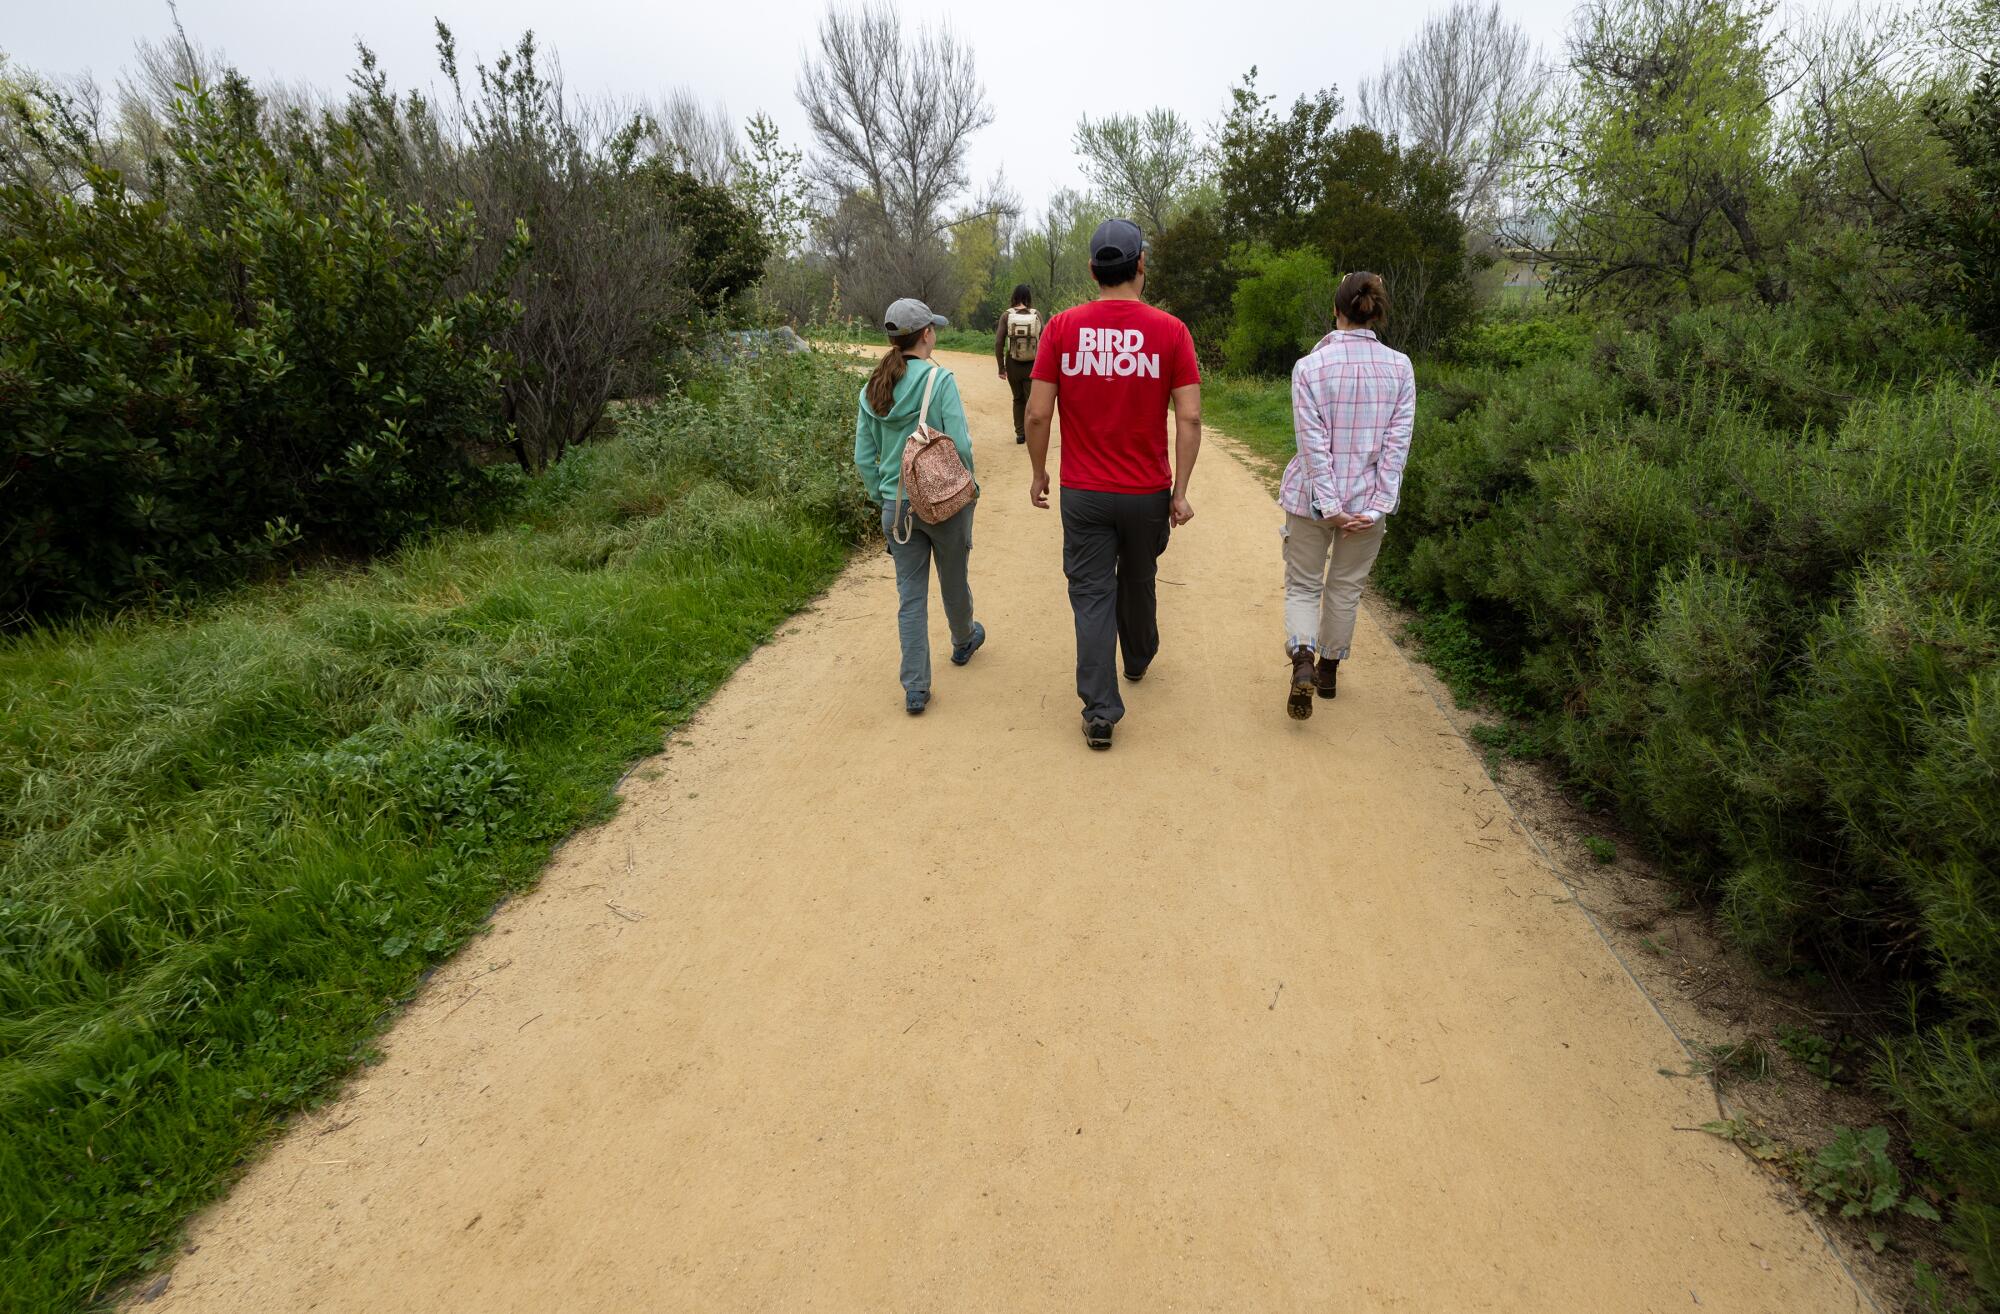 Drei Menschen gehen gemeinsam einen grünen Weg entlang